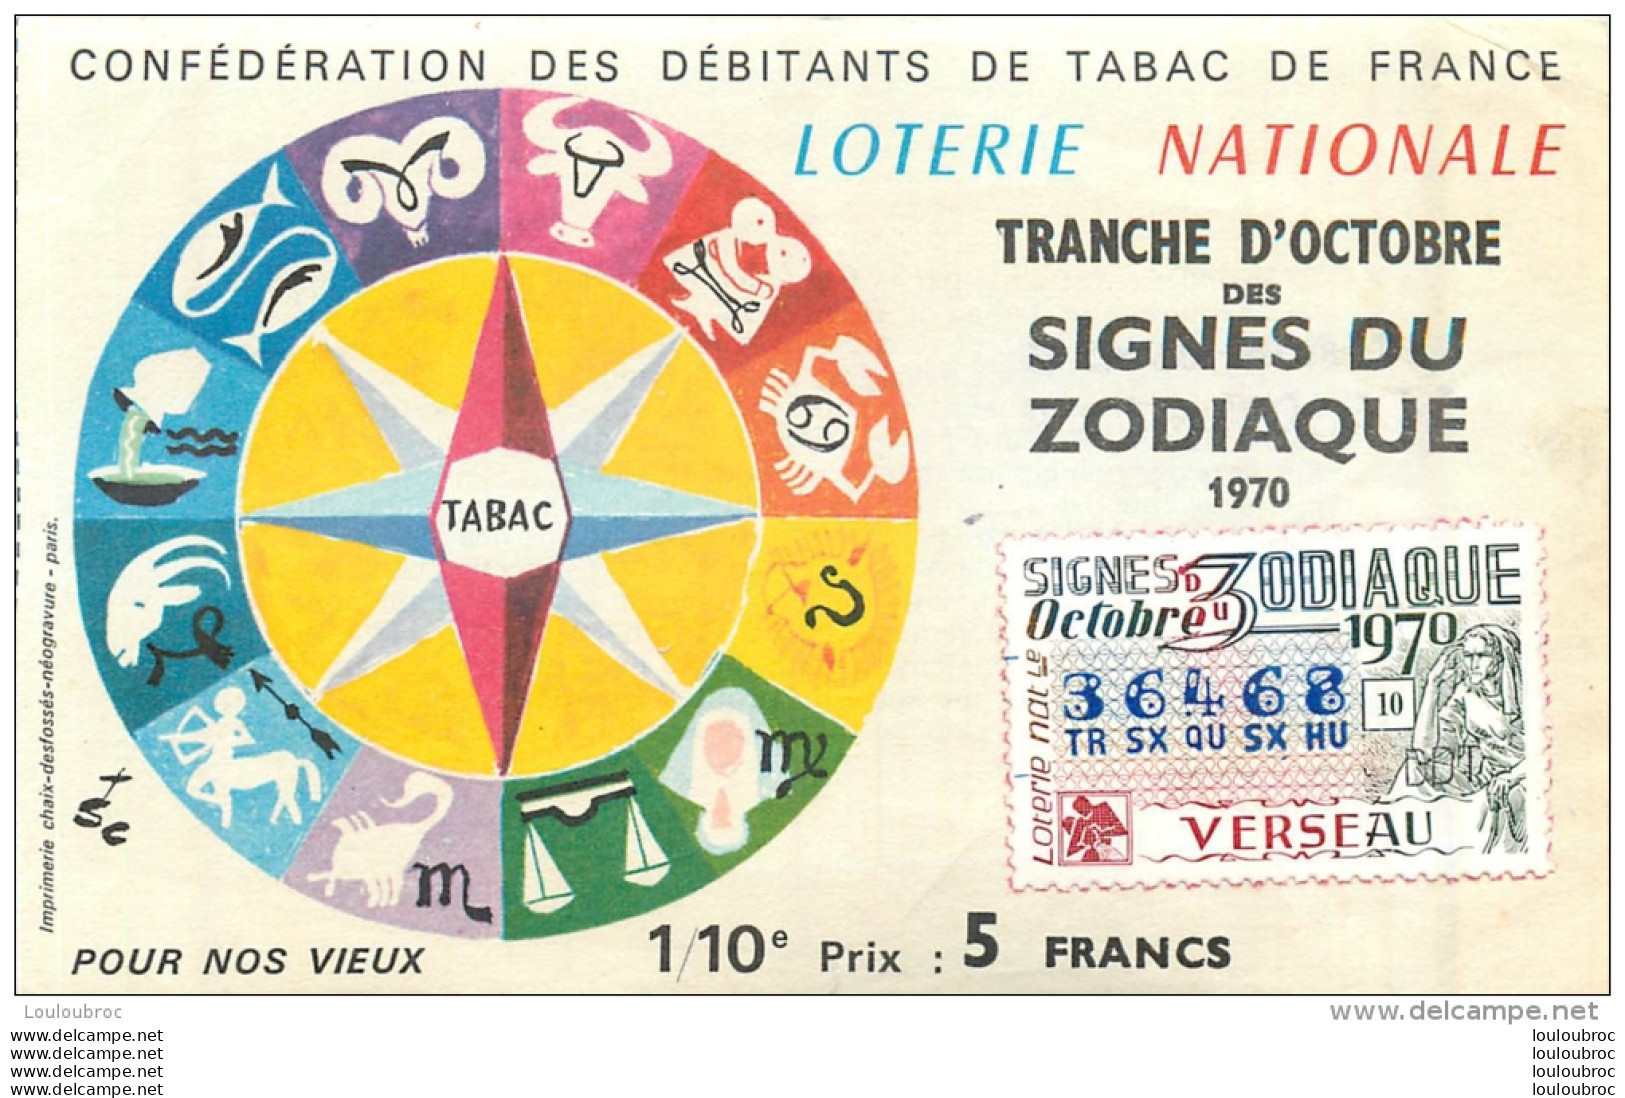 BILLET DE LOTERIE NATIONALE 1979 SIGNES DU ZODIAQUE VERSEAU - Billets De Loterie